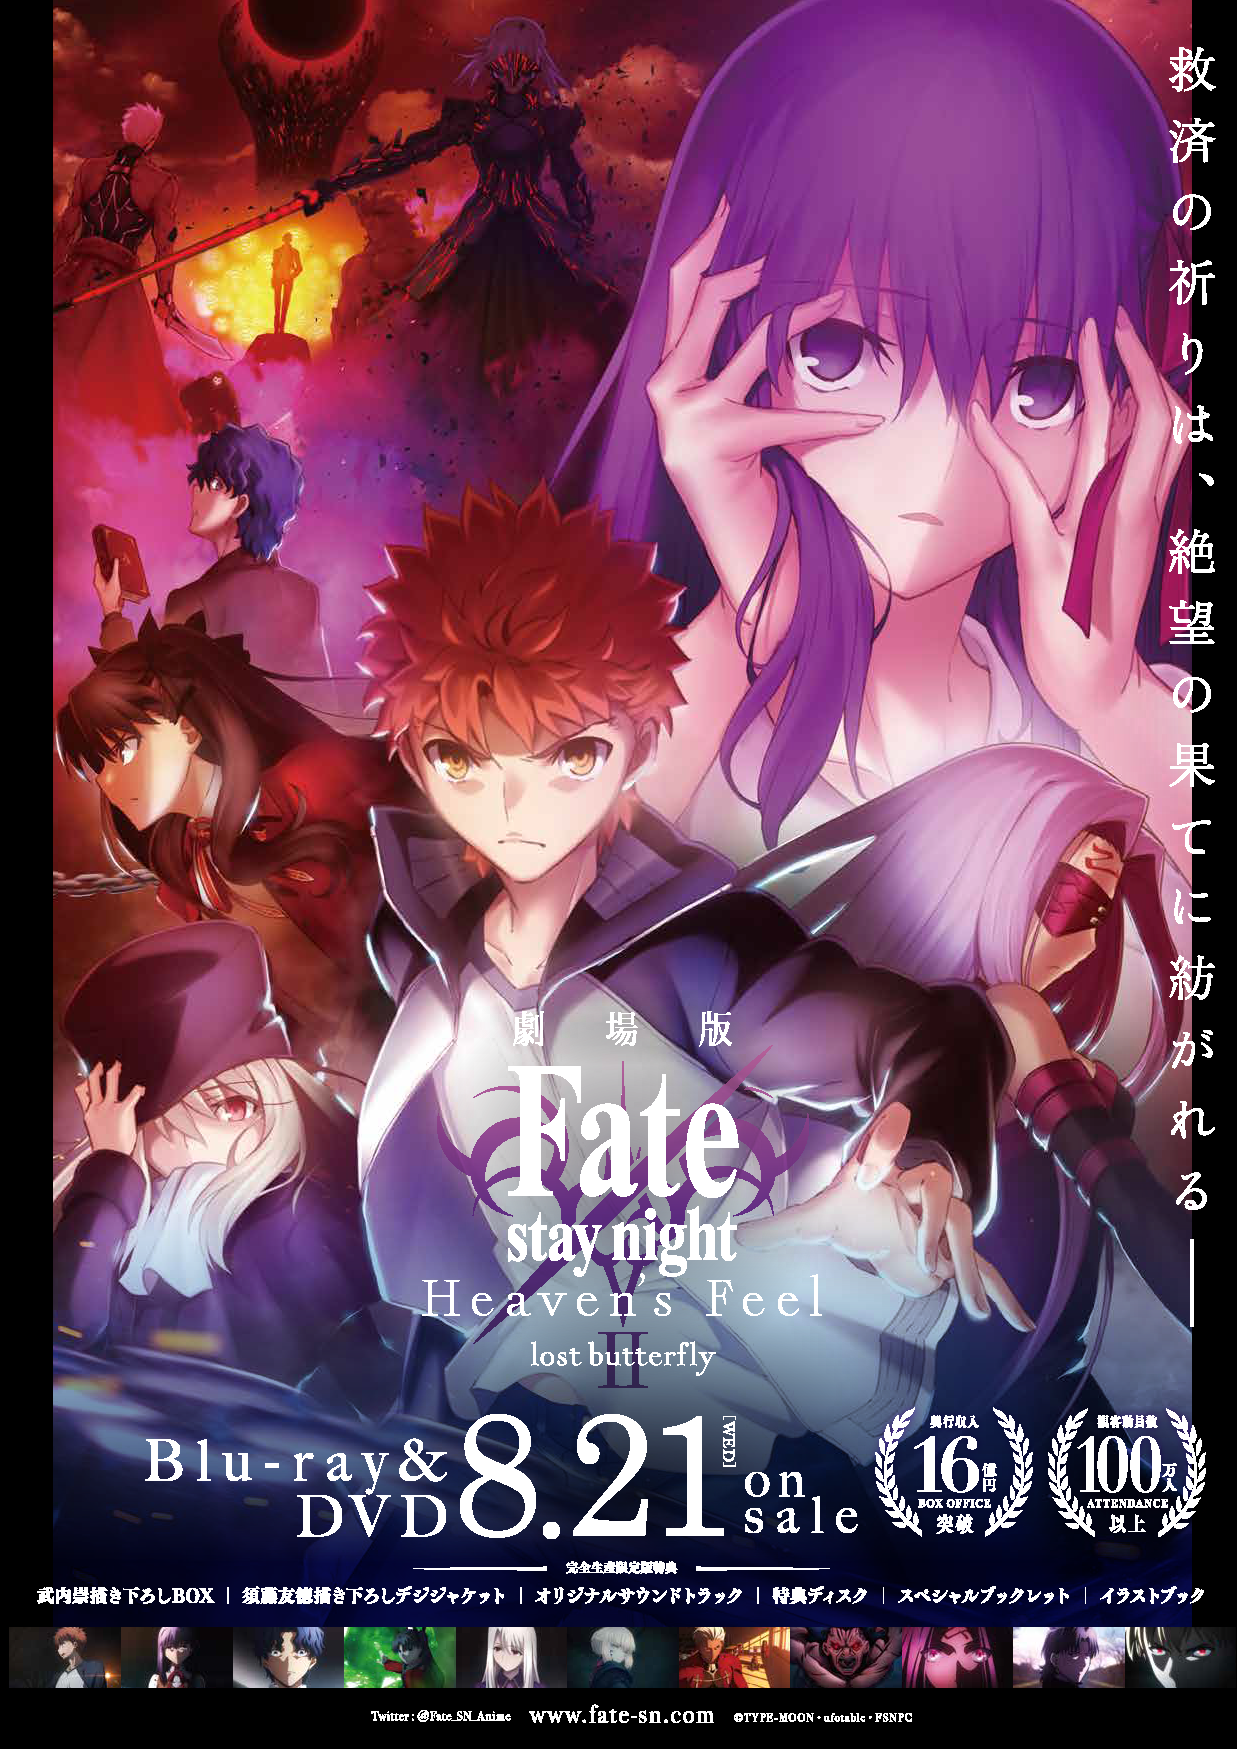 劇場版 Fate/stay night HF1〜3章ブルーレイ+アニメマテリアル